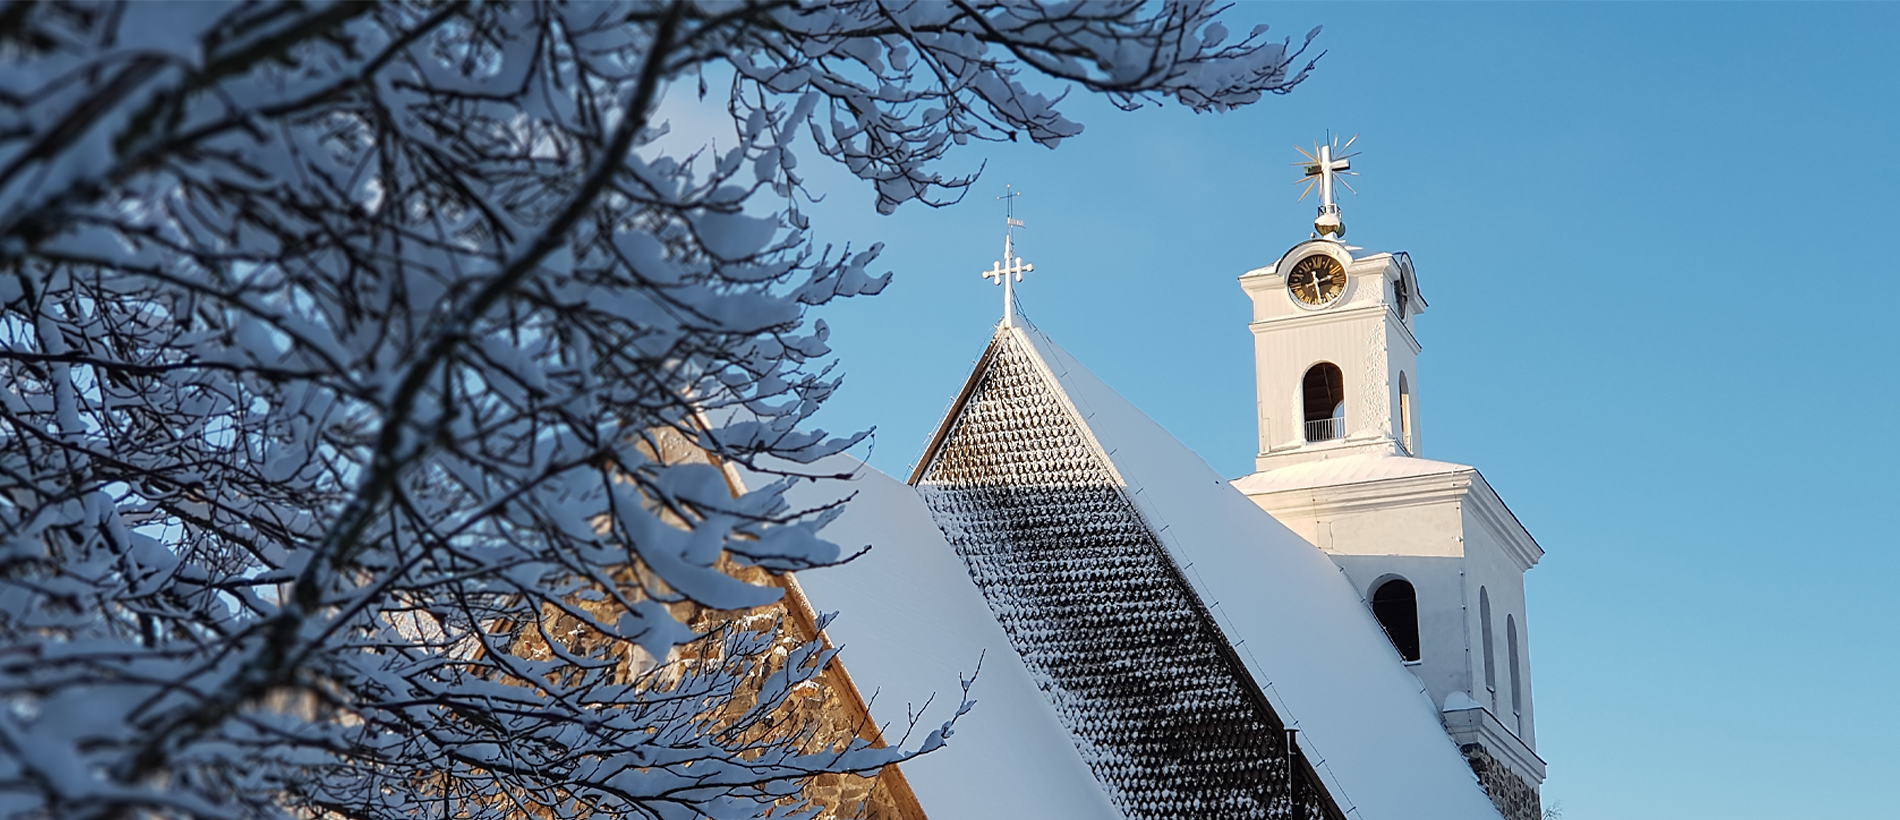 Kirkon katto ja torni lumisessa säässä ja sinistä taivasta